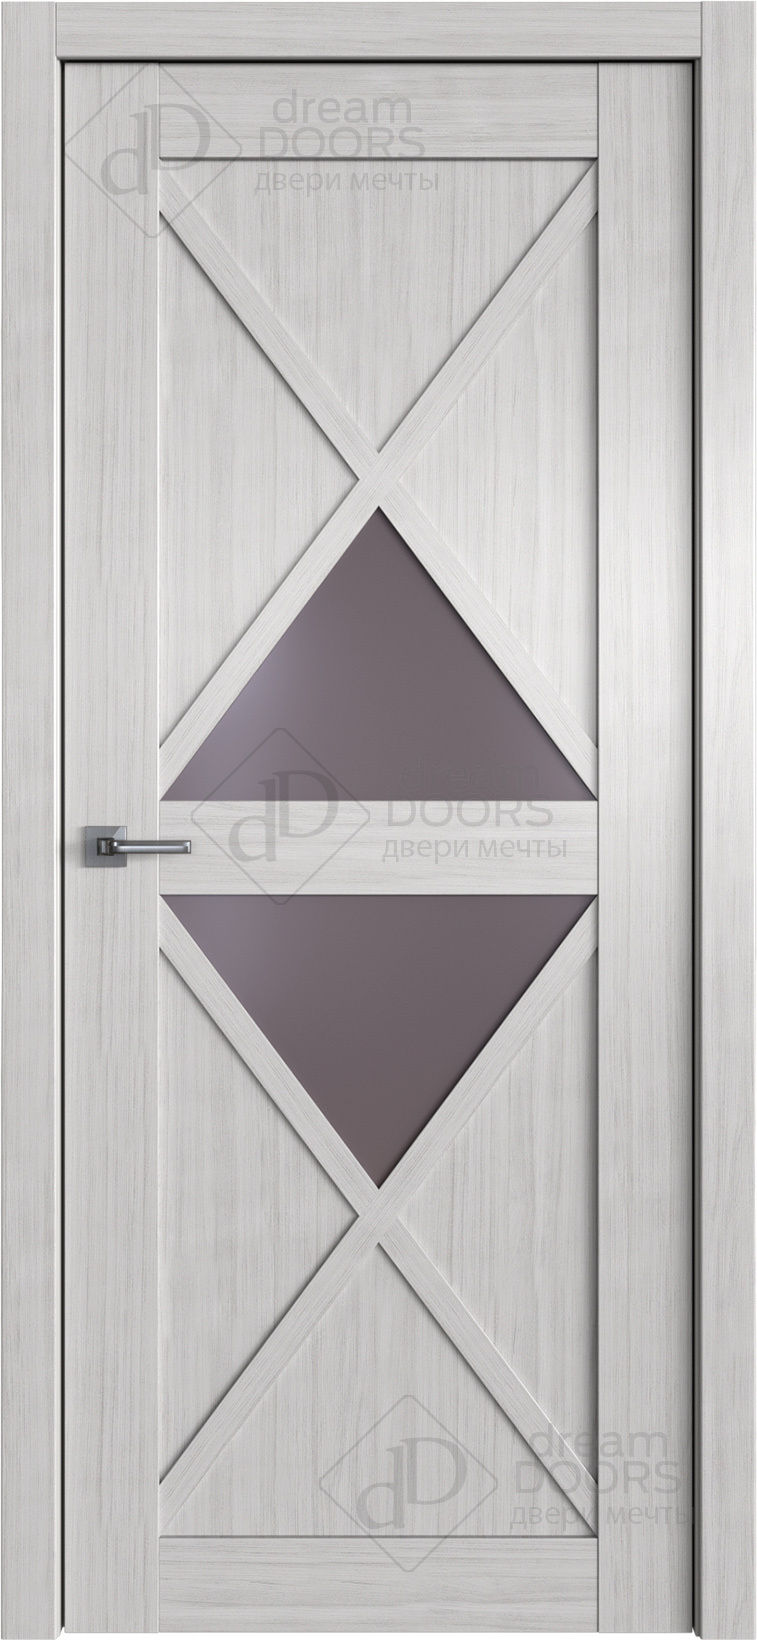 Dream Doors Межкомнатная дверь W39, арт. 20099 - фото №1